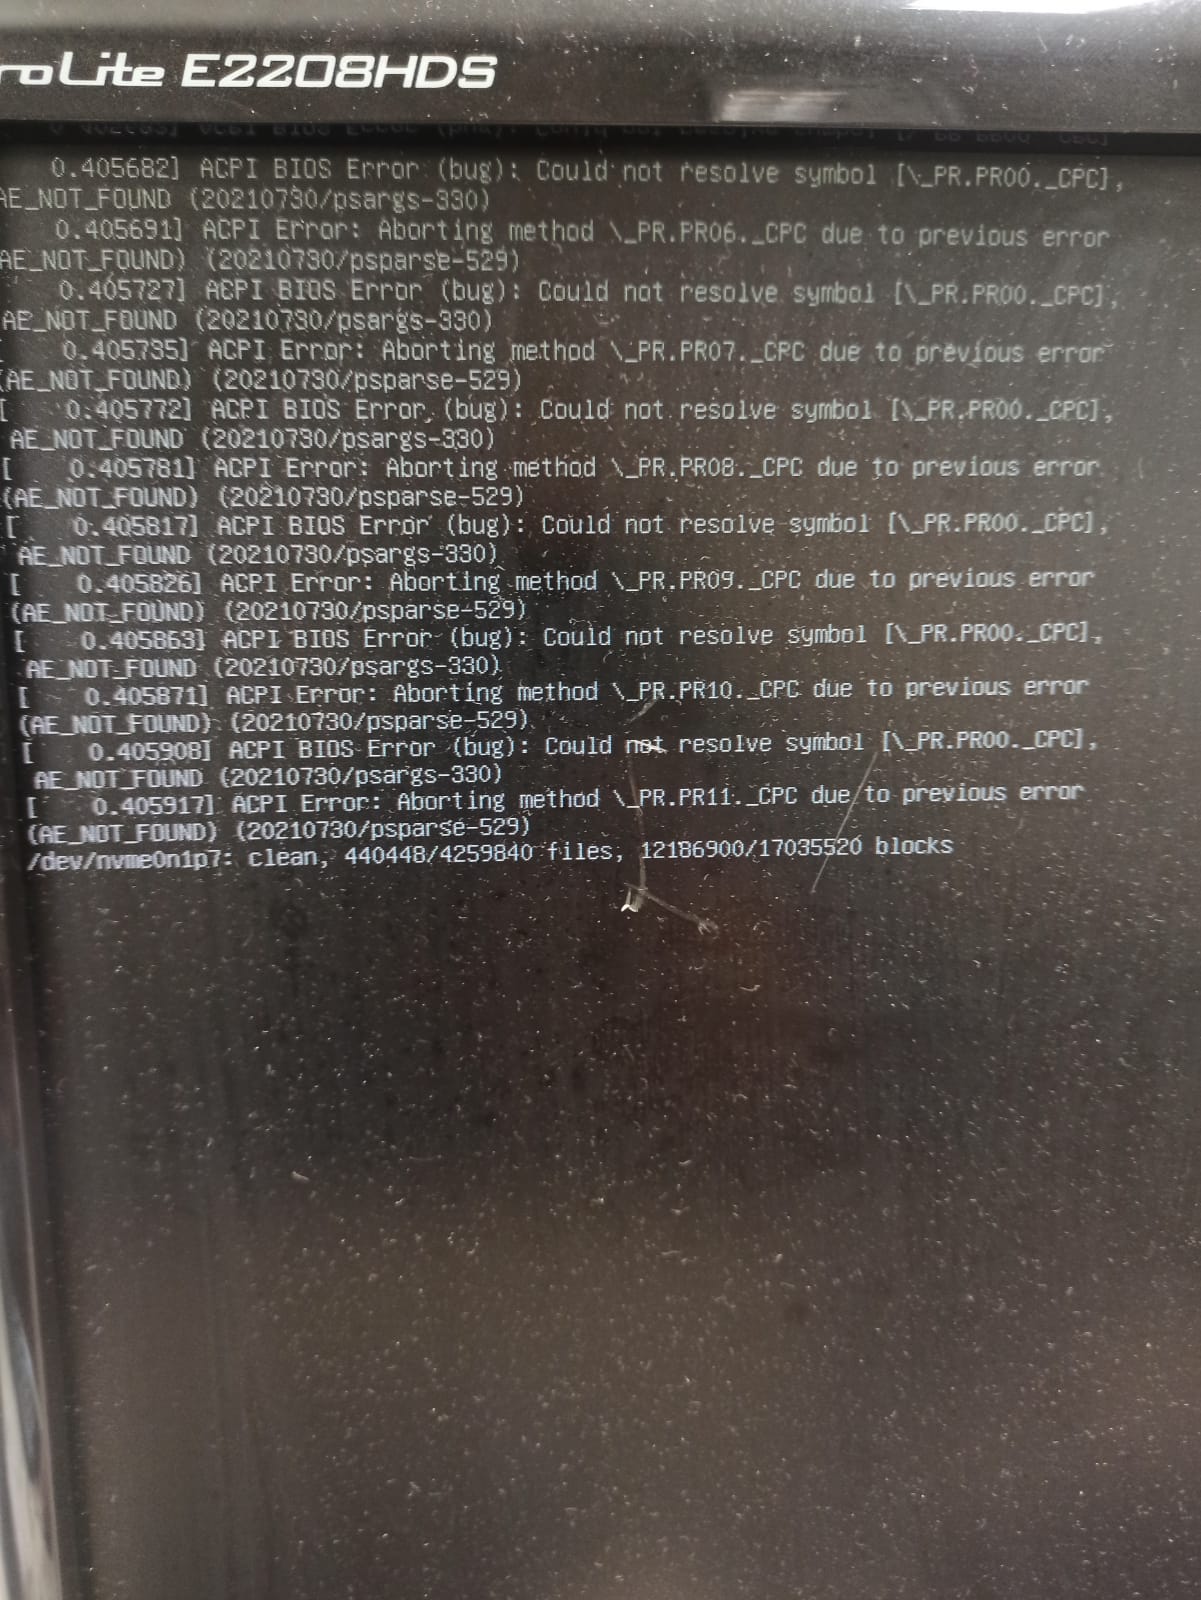 ACPI BIOS error